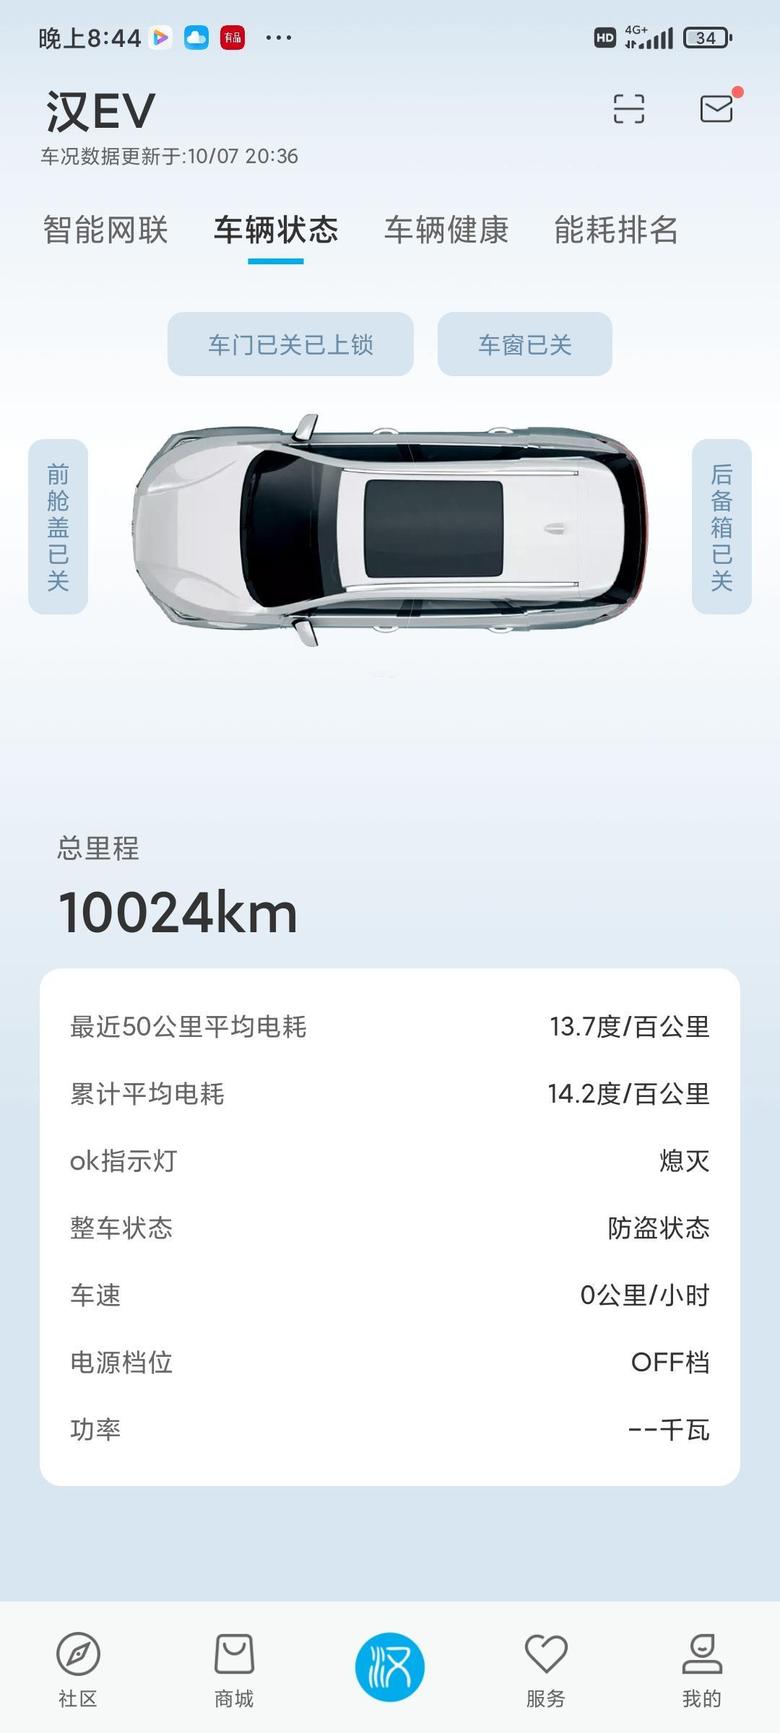 ?能耗分享所在城市北京所开车型比亚迪汉ev605尊贵型能耗或油耗情况如下图所示满油或满电续航605km作为本系列分享的最后一篇，到这里给大家上两张截图分享一下，三周两千公里，含呼市四天三宿的一个平均能耗对比。高速时速100 130，载客含司机四人，后备箱大小包拉满。